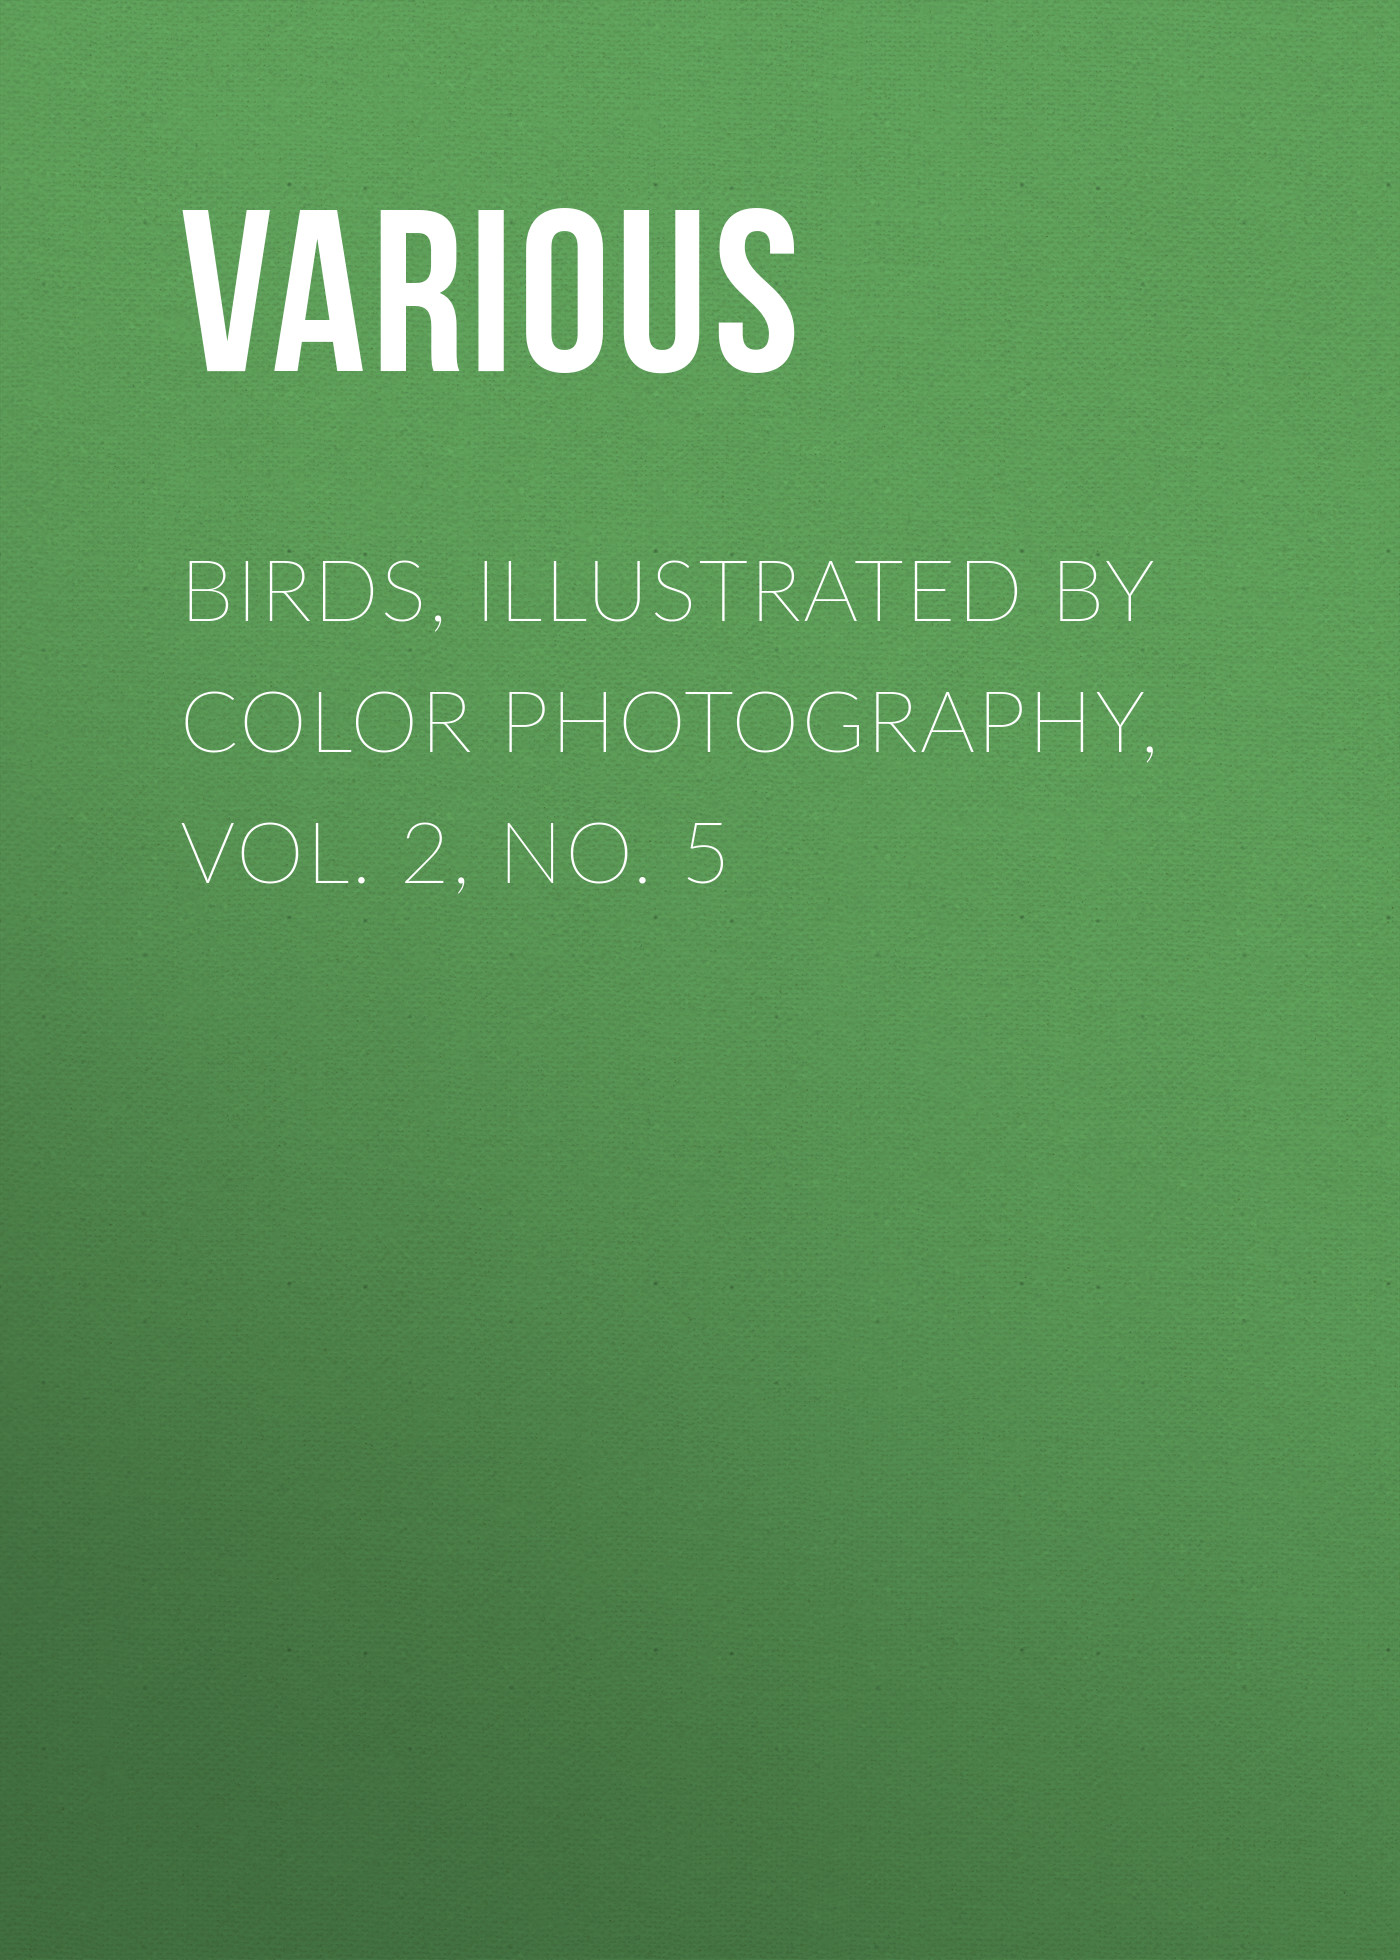 Книга Birds, Illustrated by Color Photography, Vol. 2, No. 5 из серии , созданная  Various, может относится к жанру Журналы, Биология, Природа и животные, Зарубежная образовательная литература. Стоимость электронной книги Birds, Illustrated by Color Photography, Vol. 2, No. 5 с идентификатором 25569319 составляет 0 руб.